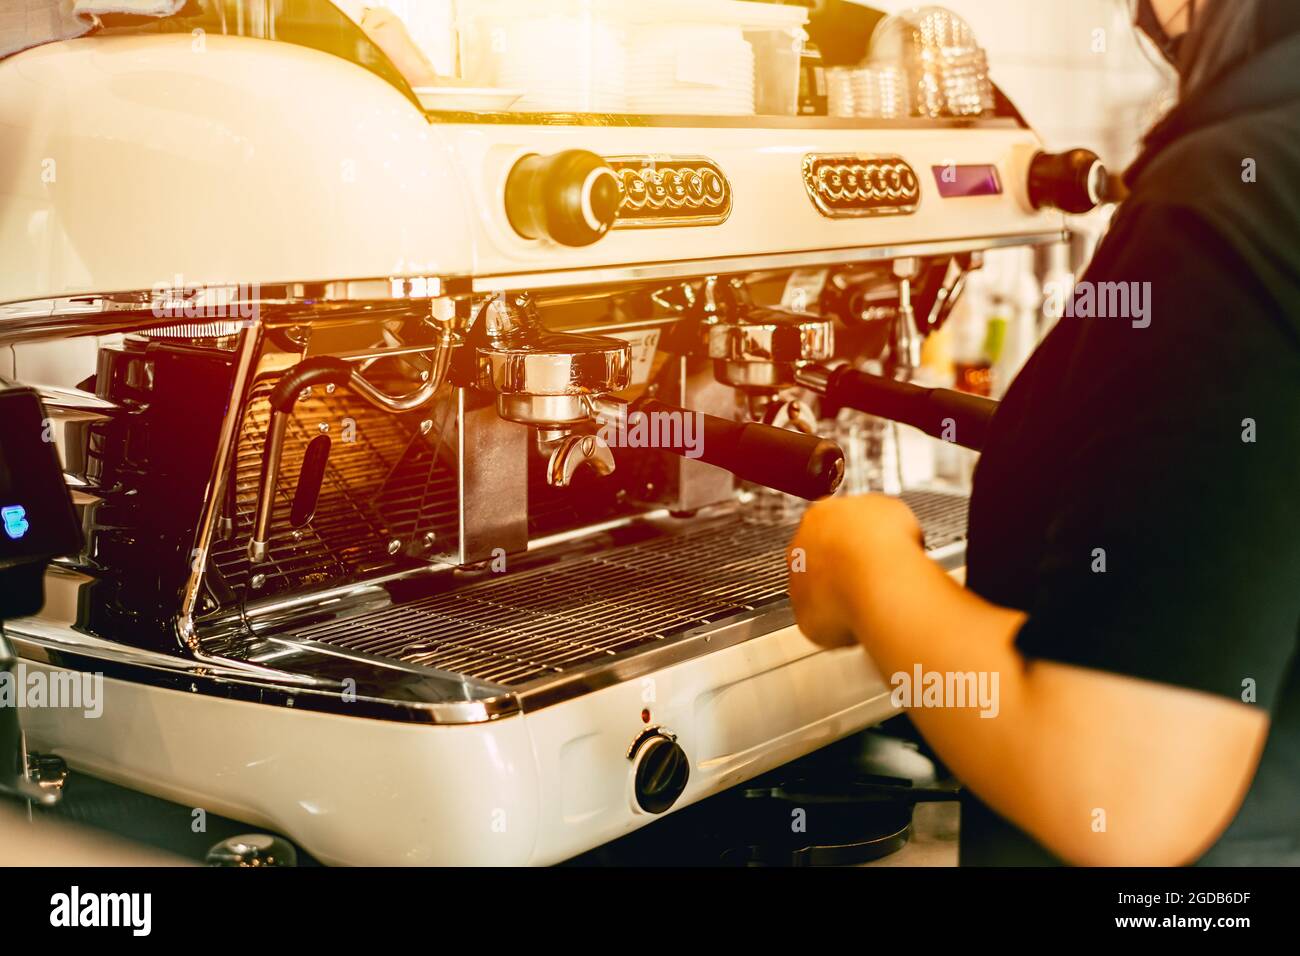 Foto Macchina Caffe Vintage, oltre 75.000 Foto Stock Gratuite di Alta  Qualità